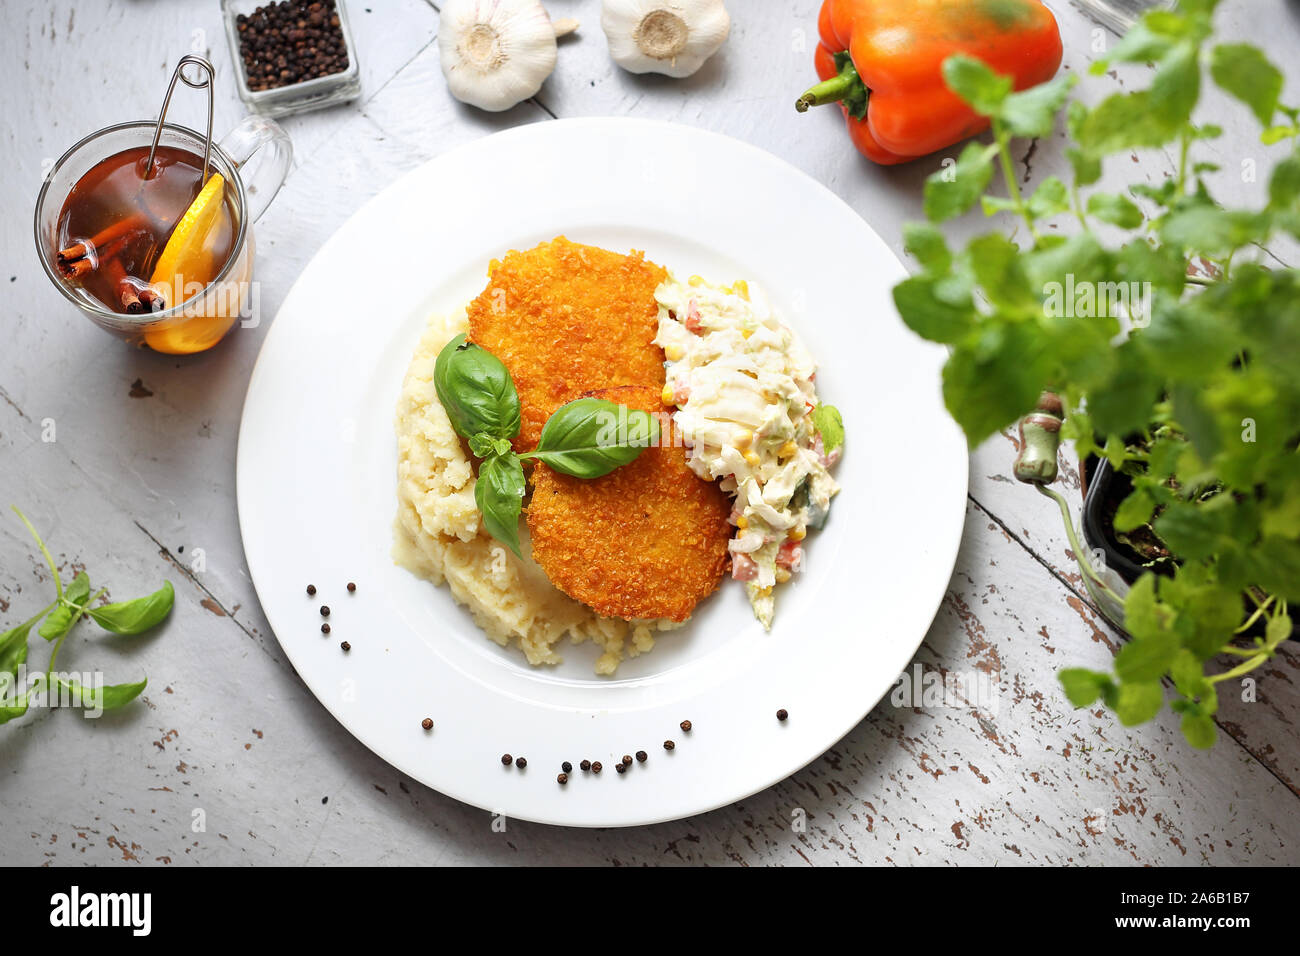 Sellerie Schnitzel in Mais mit Kartoffelpüree - Knoblauch und Zitrone, Chinakohl Salat, Stockfoto